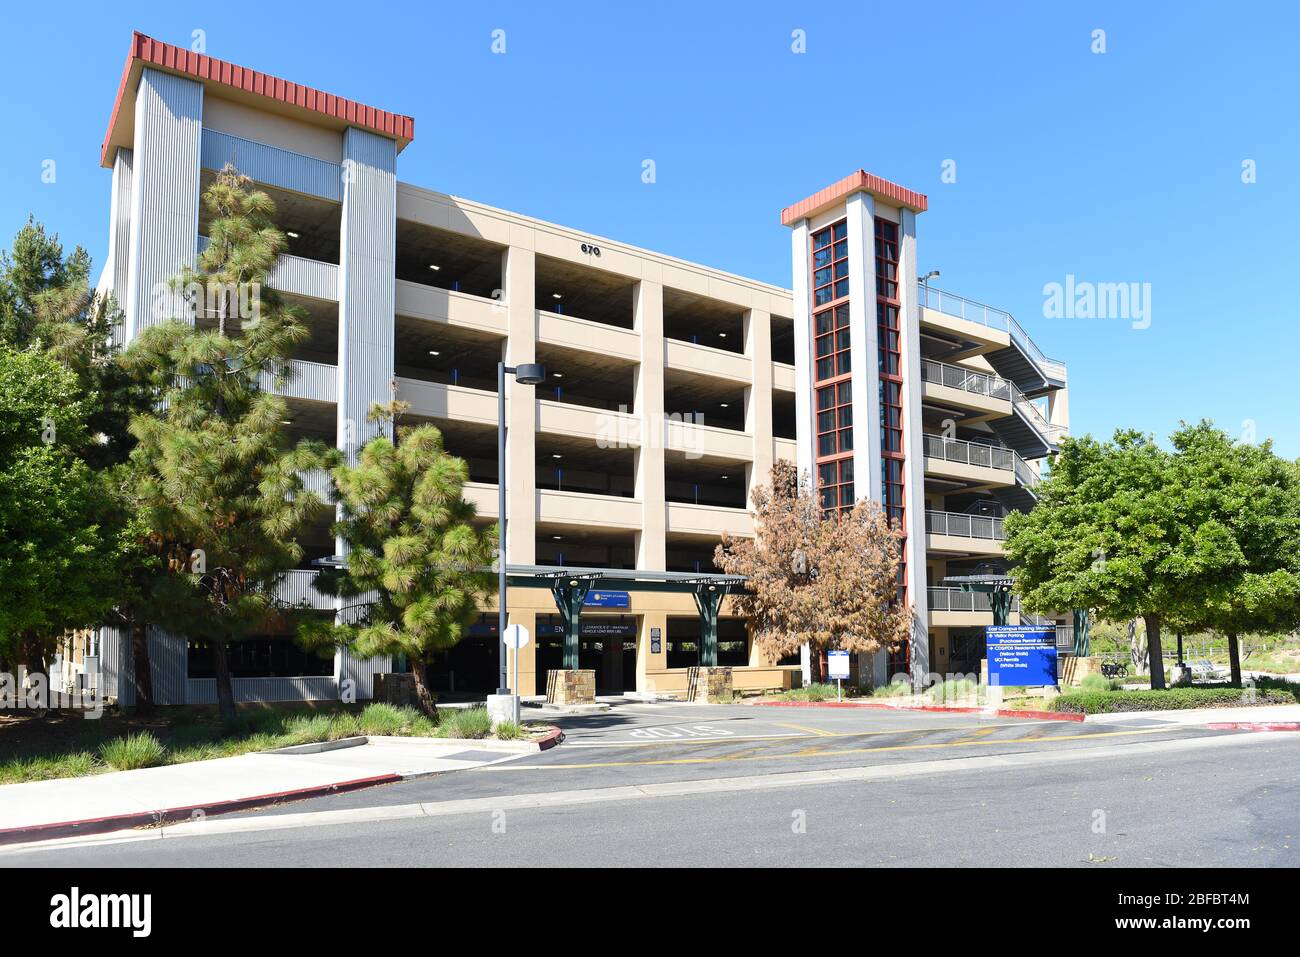 IRVINE, CALIFORNIE - 16 AVRIL 2020: East Campus parking structure et charge point Station à l'Université de Californie Irvine, UCI. Banque D'Images